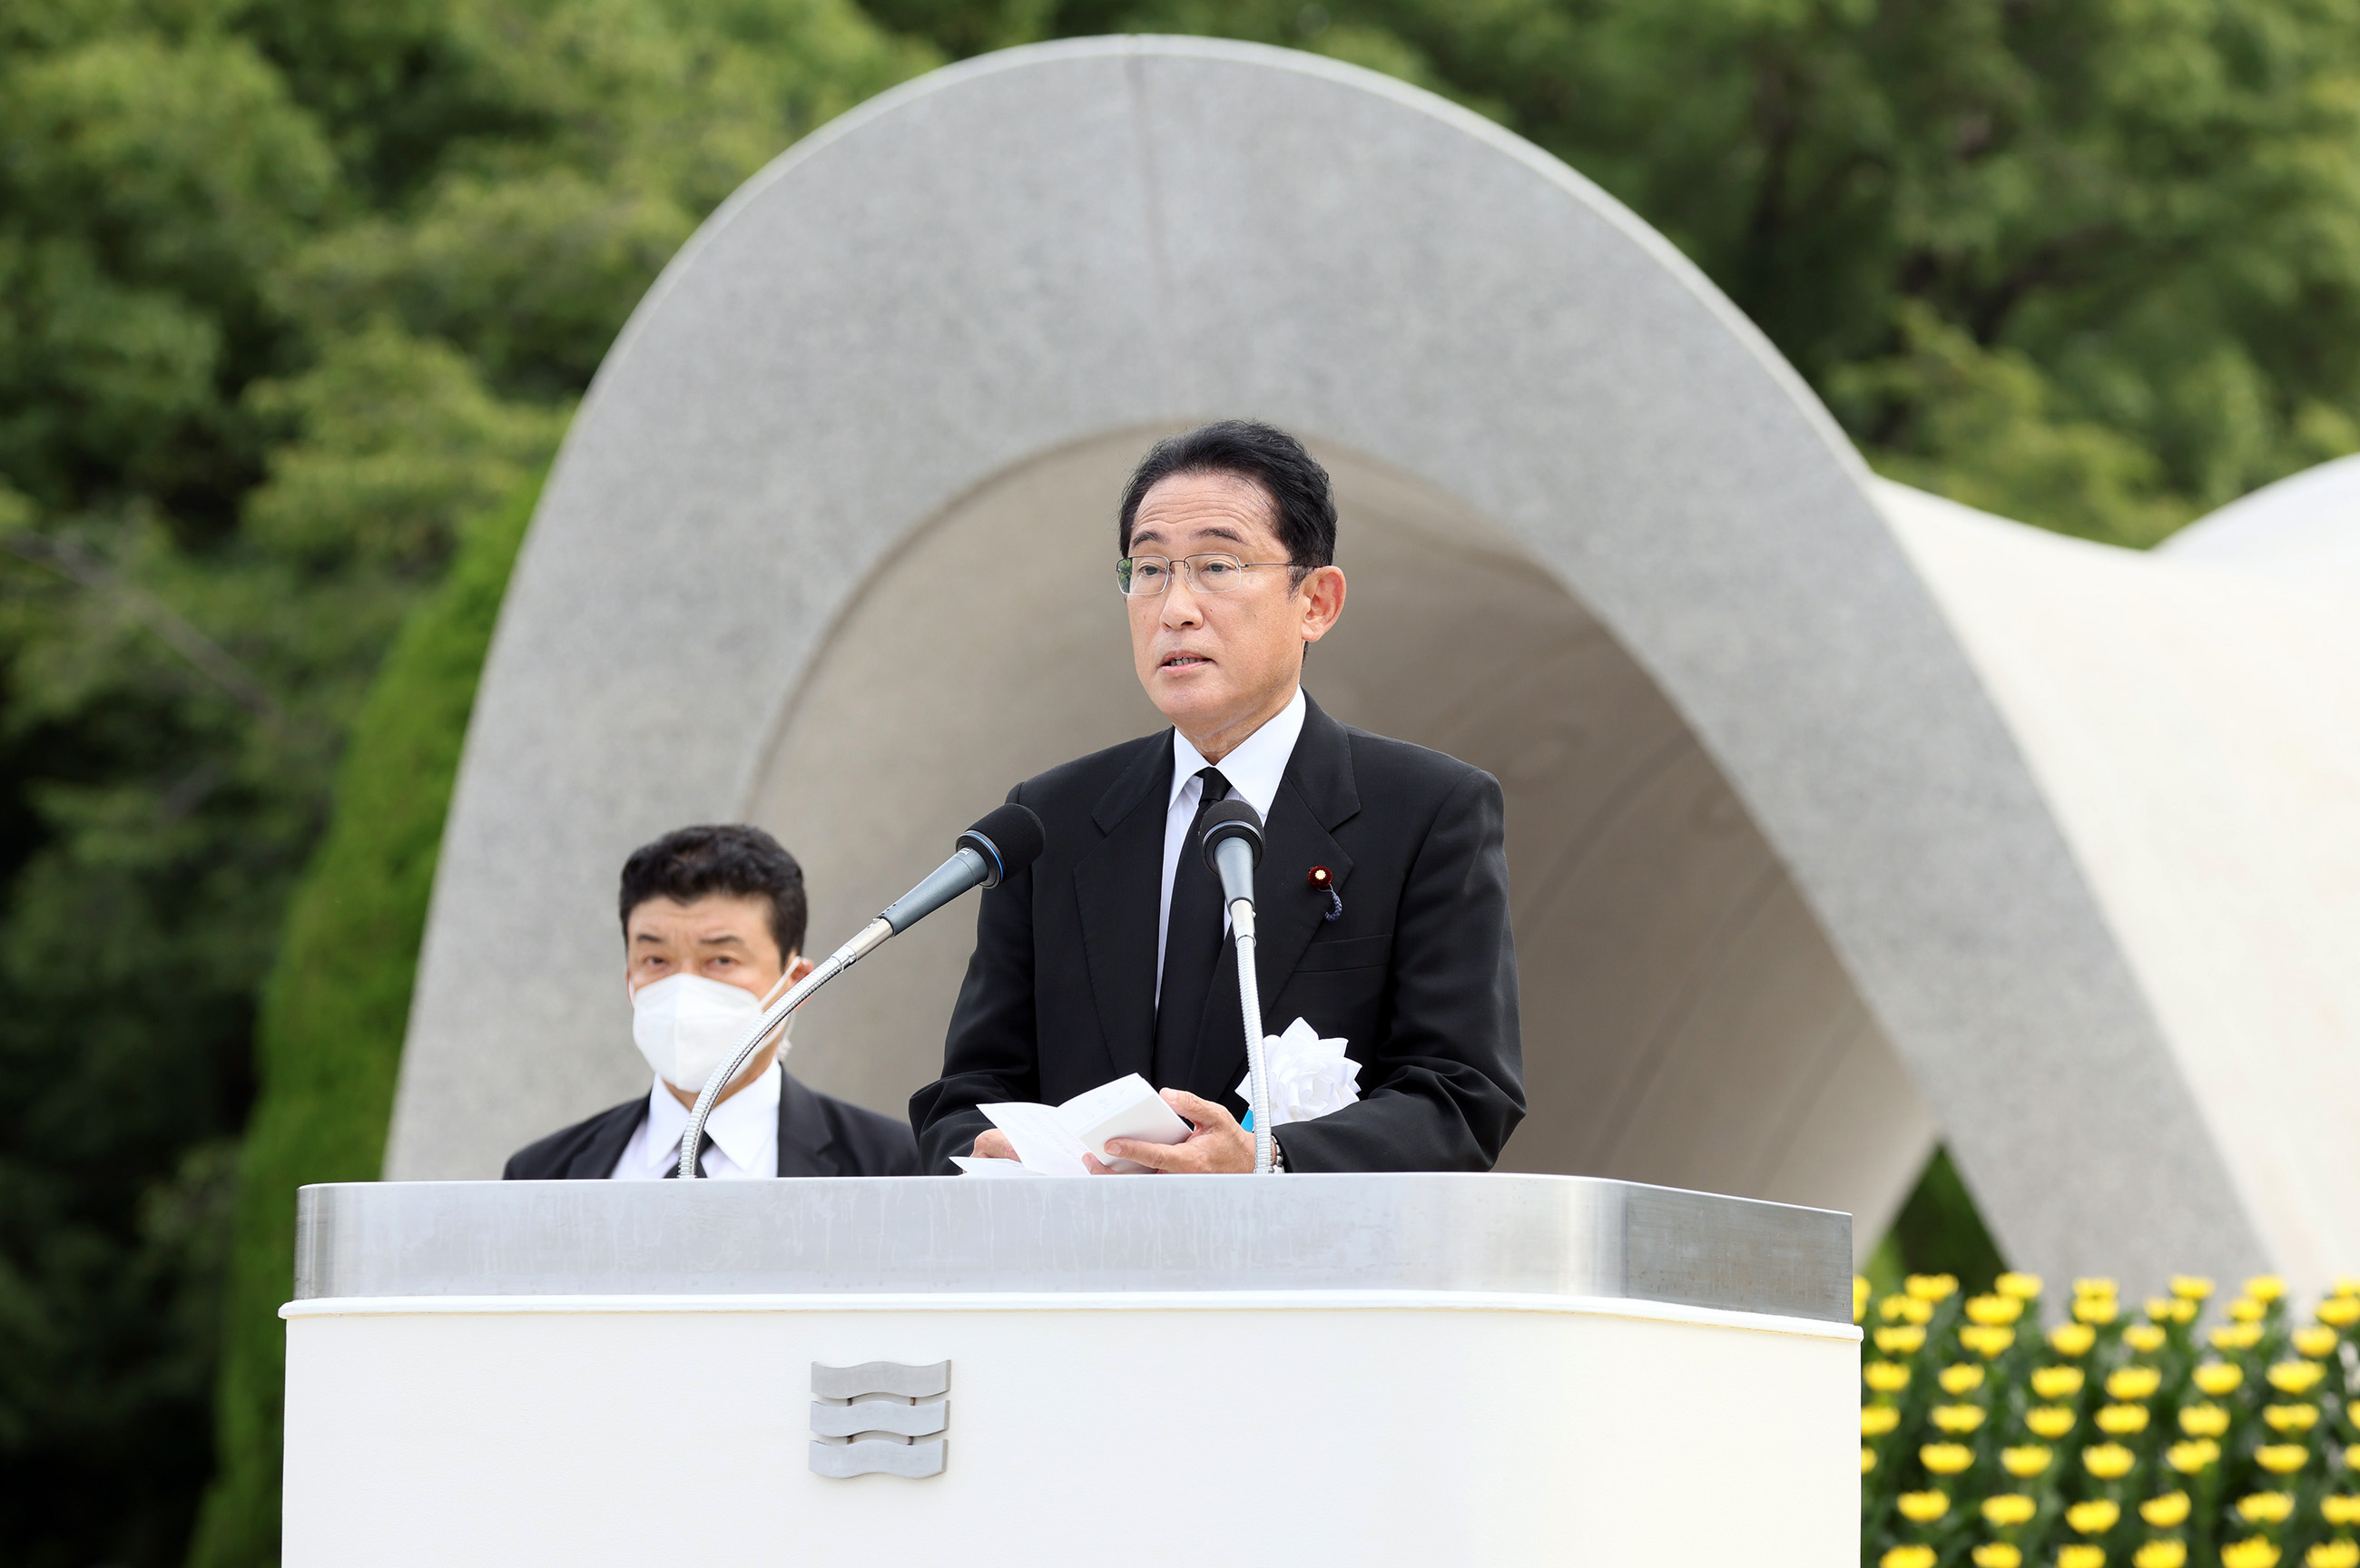 出席广岛市原子弹爆炸遇难者悼念仪式暨和平祈愿仪式等